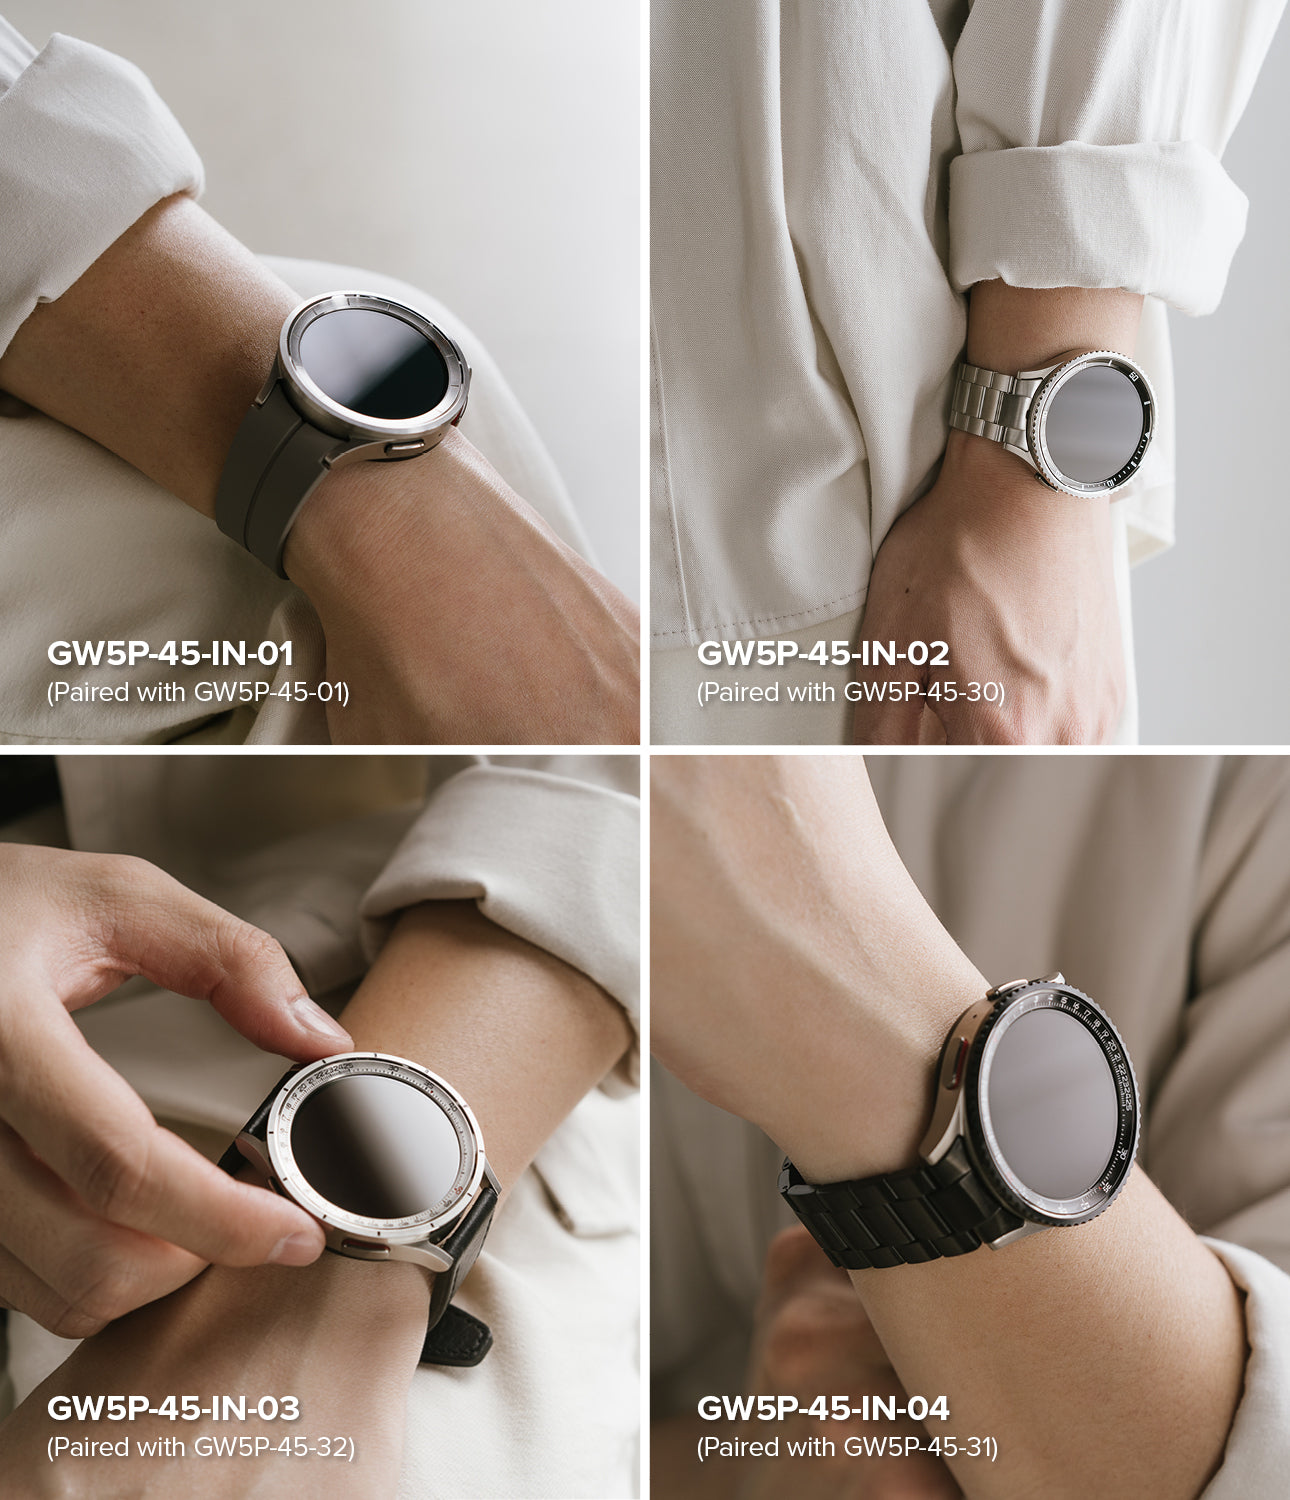 Galaxy Watch 5 Pro 45mm | Inner Bezel Styling 45-IN-02